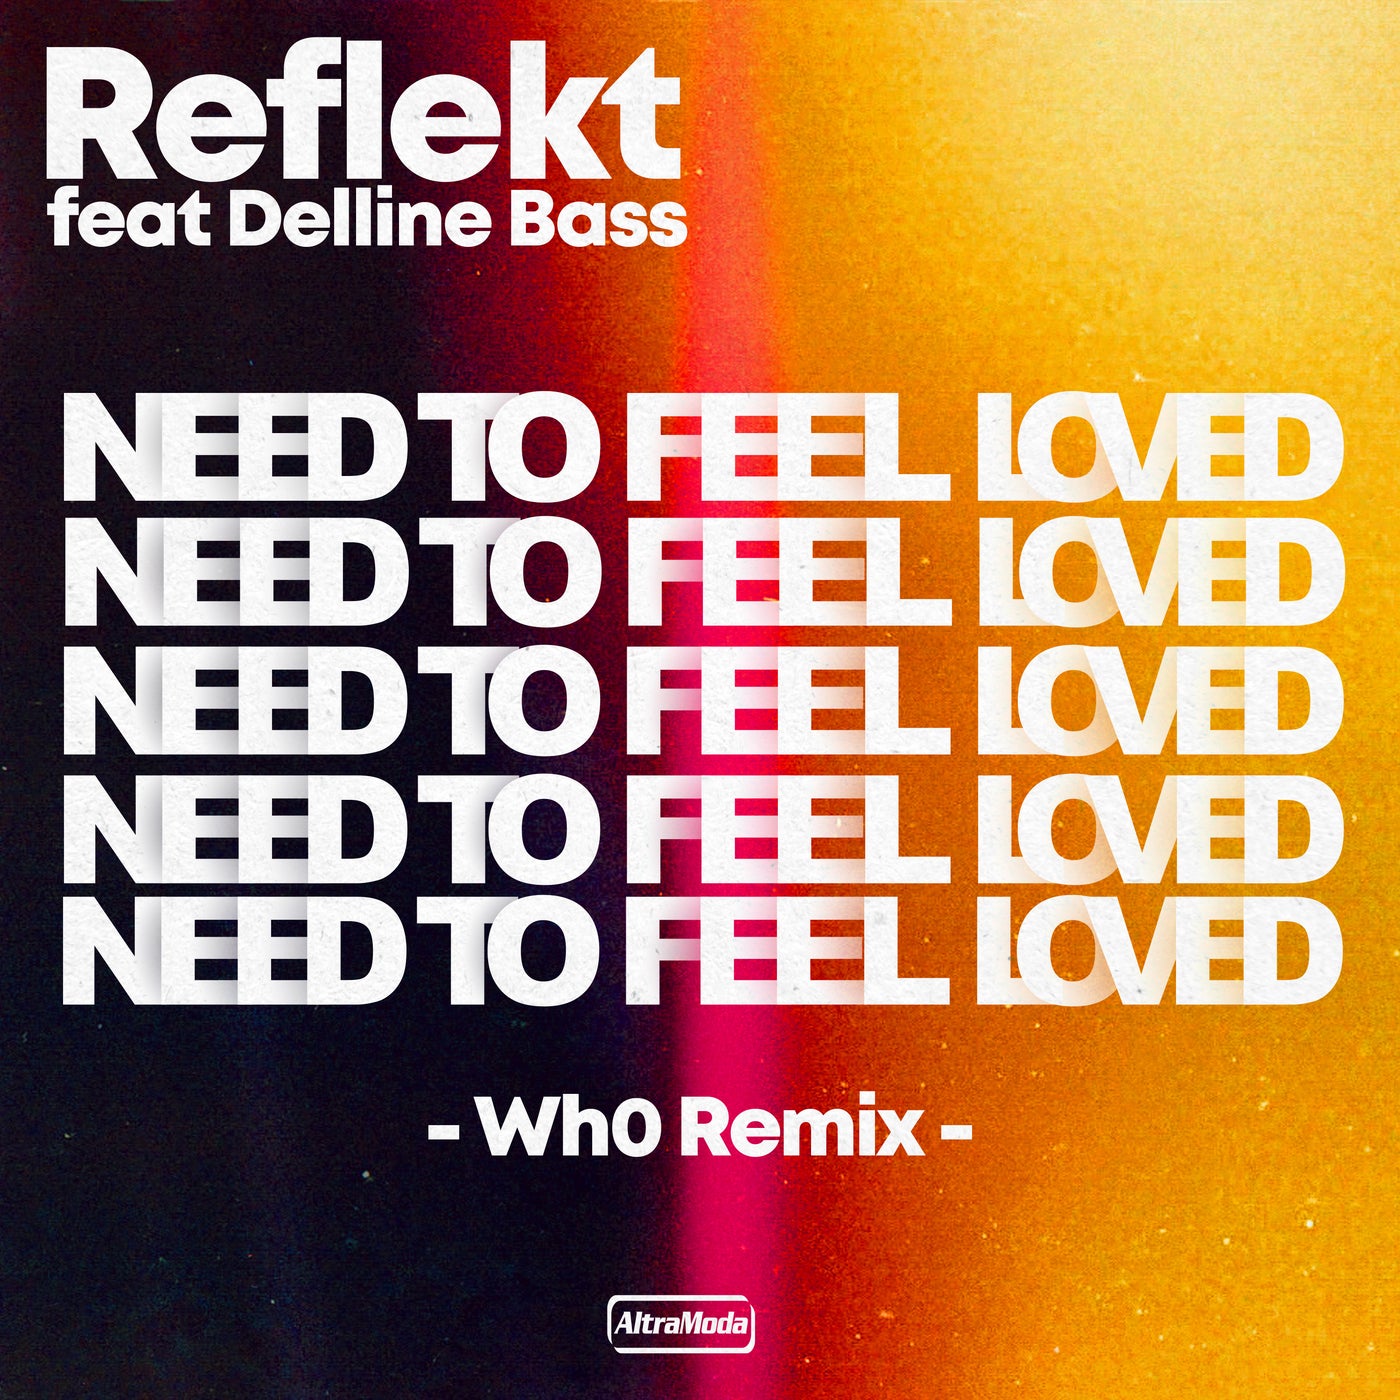 Need to feel loved feat delline. Reflekt featuring Delline Bass - need to feel Love. Reflekt ft. Delline Bass. Reflekt need to feel Loved. Reflekt_featuring.